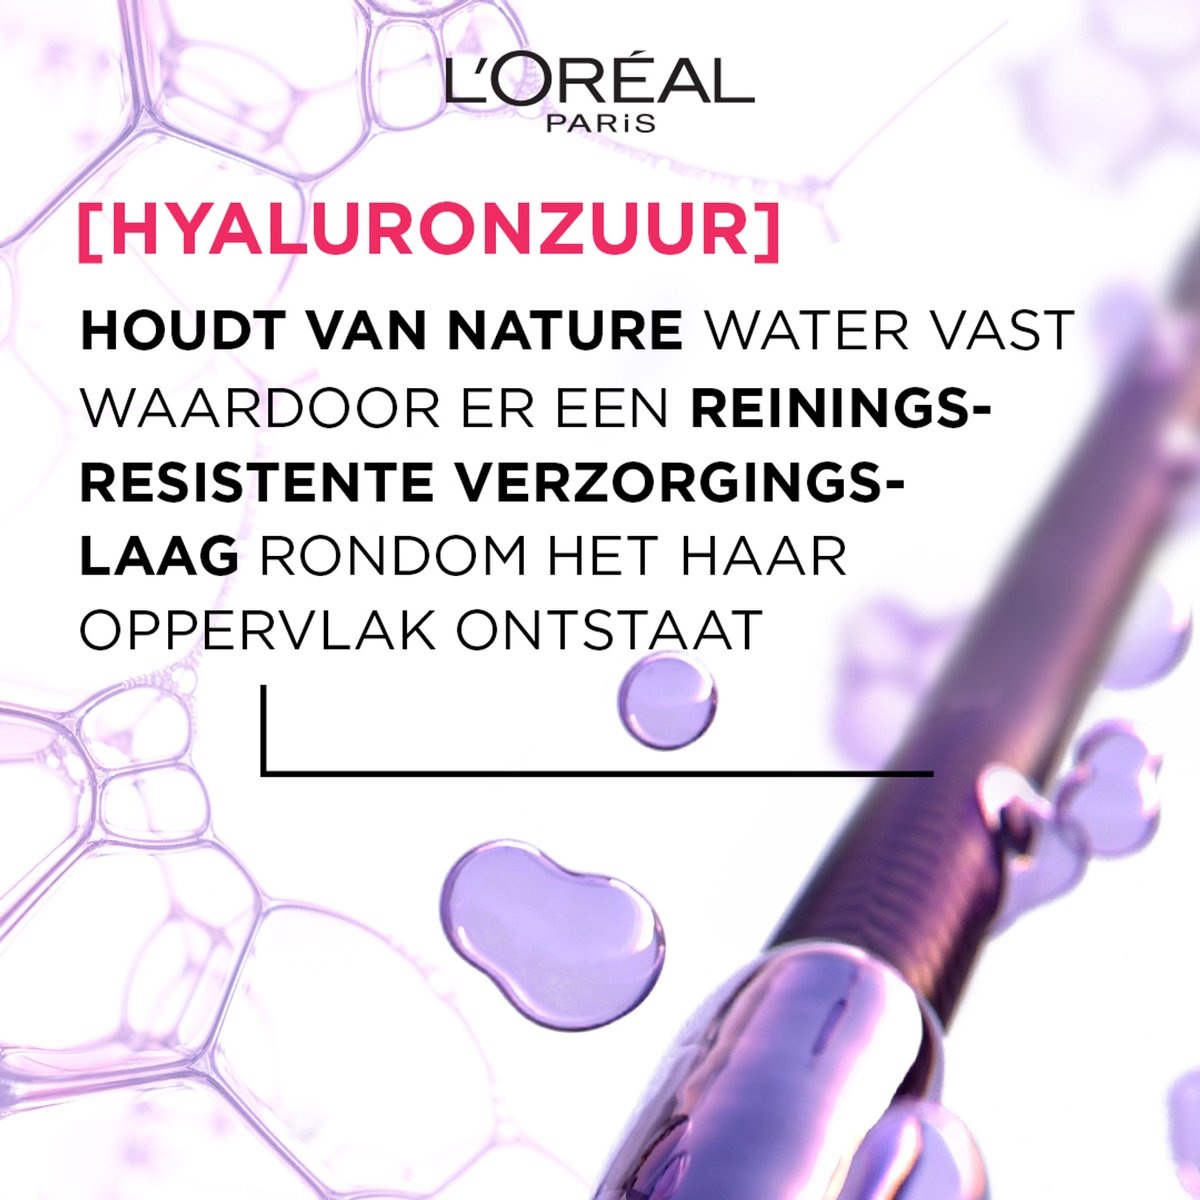 L'Oréal Paris Elvive Hydra Hyaluronic Wonder Water - Hydraterend Met Hyaluronzuur - 200ml